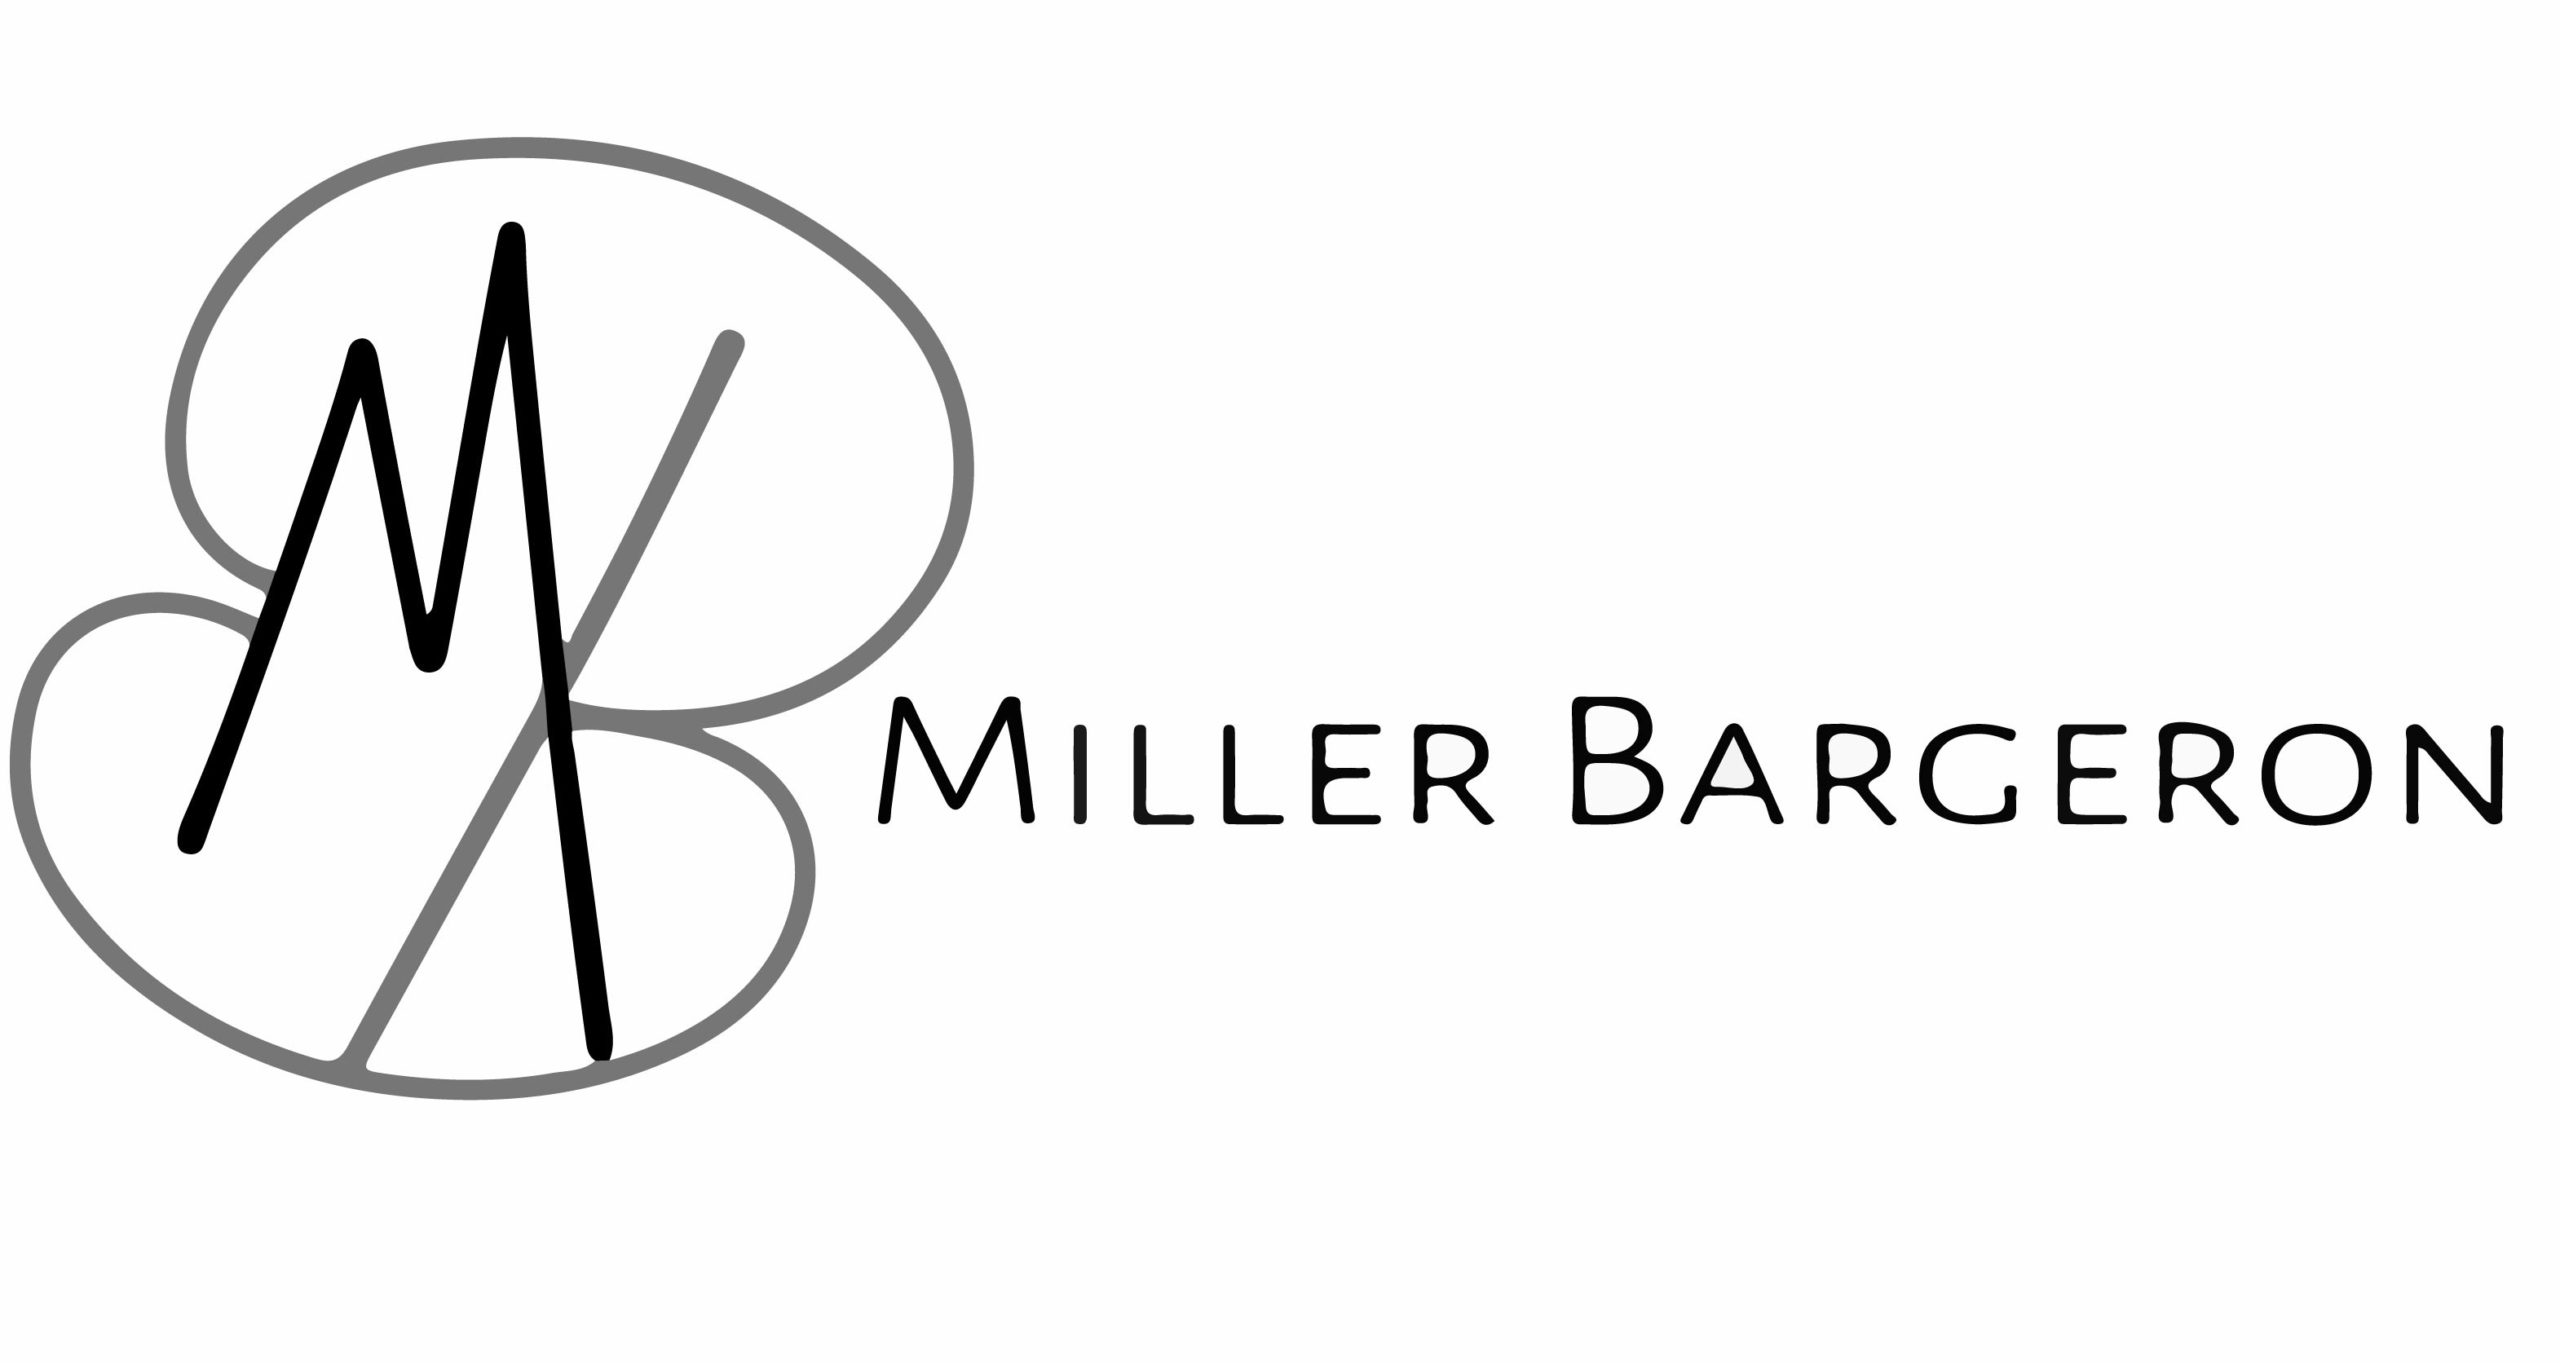 Miller Bargeron